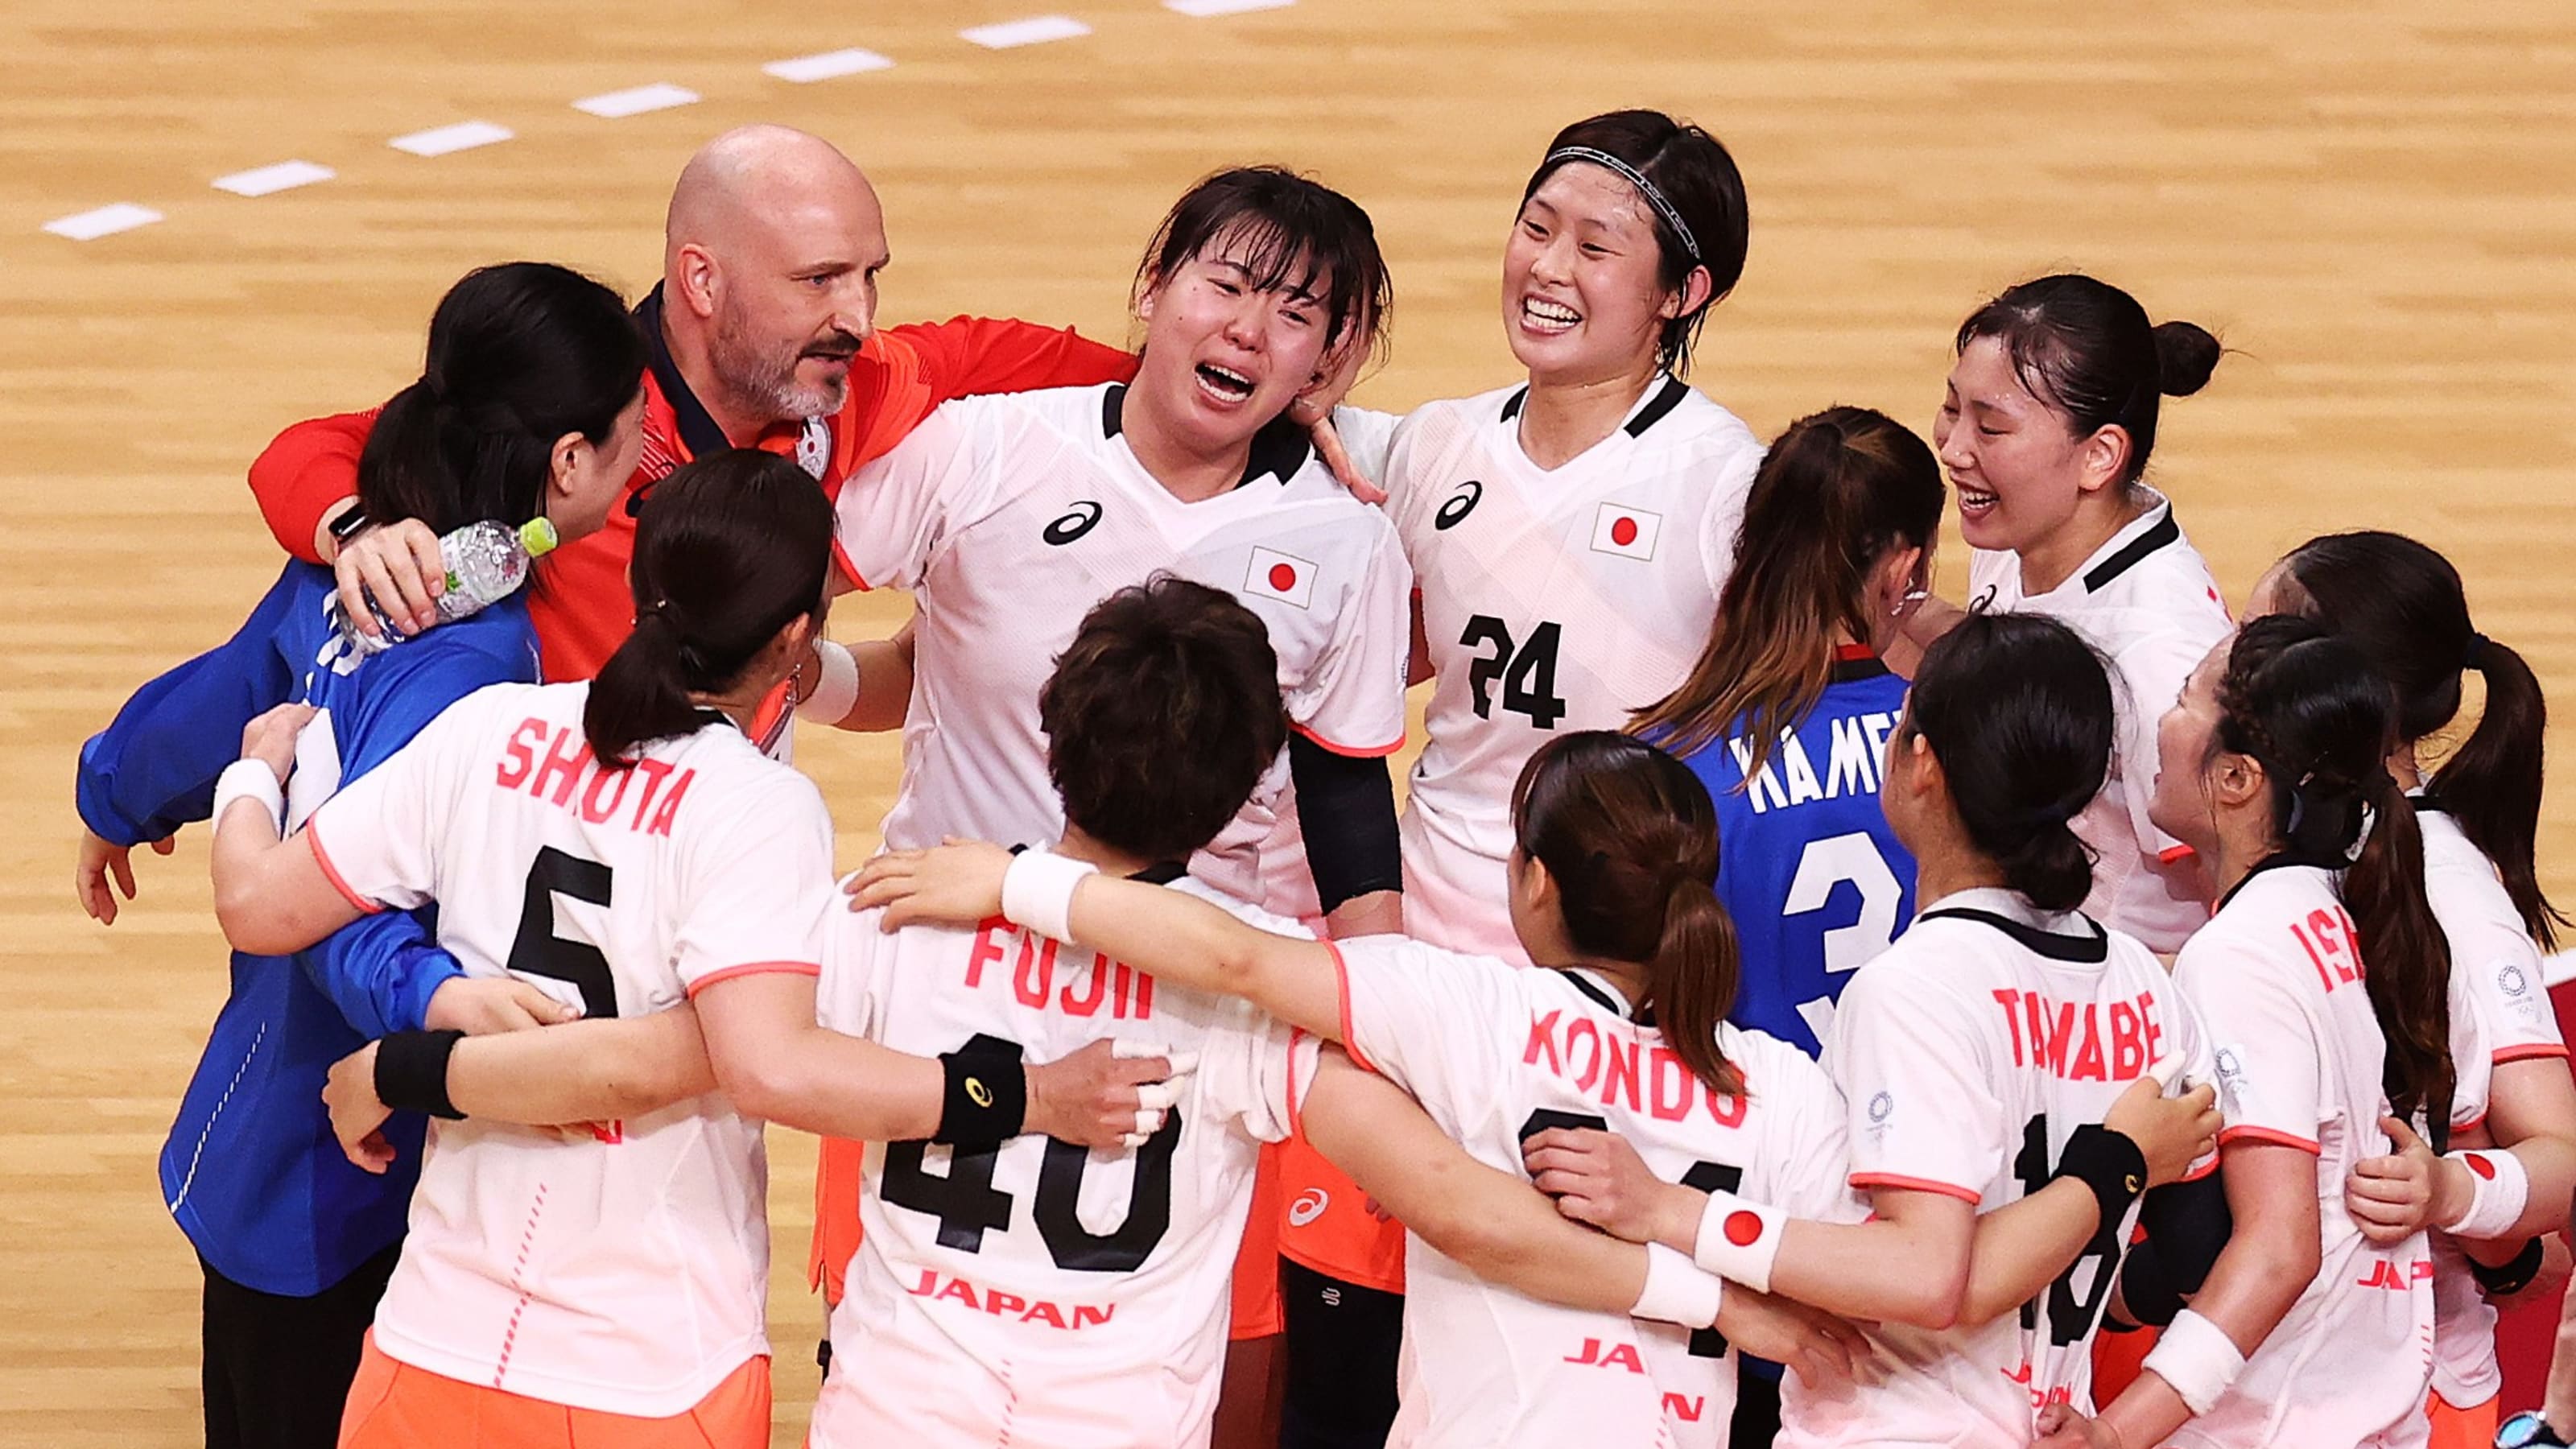 7月29日 東京五輪 ハンドボール競技 女子 の放送予定 日本代表 おりひめjapanは韓国と対戦